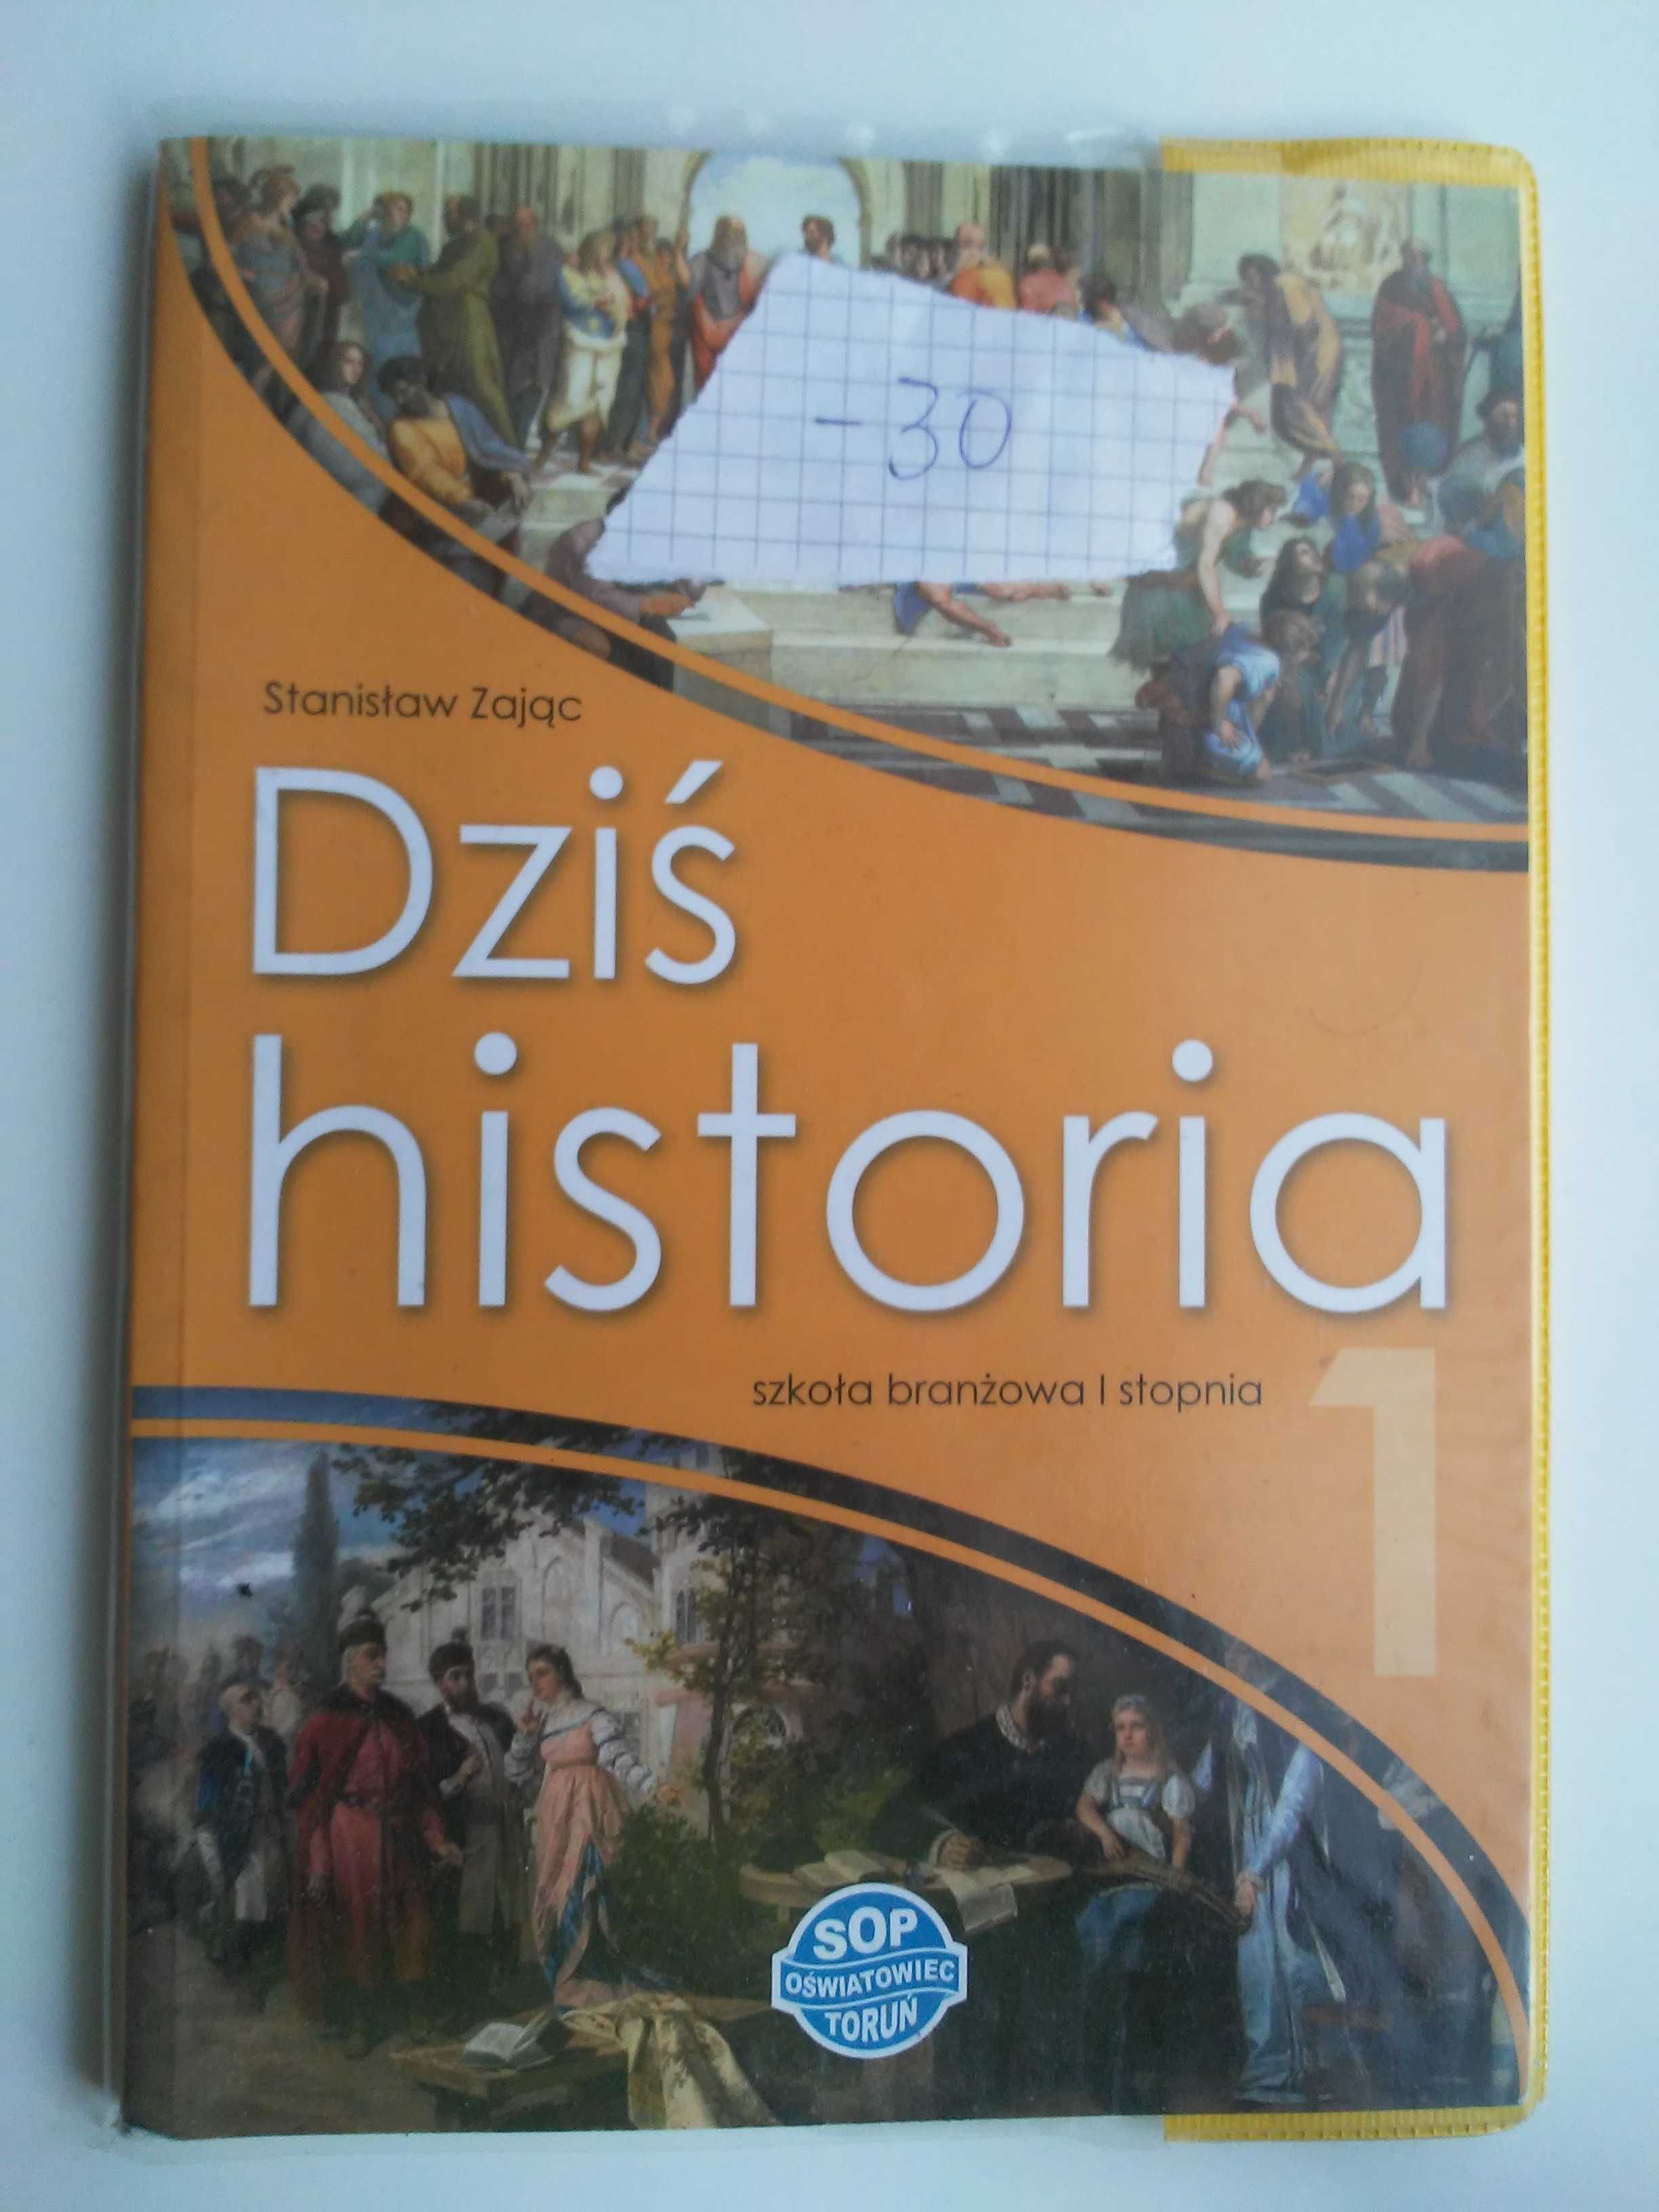 Podręcznik "Dziś historia" do szkoły branżowej 1 stopnia/część 1